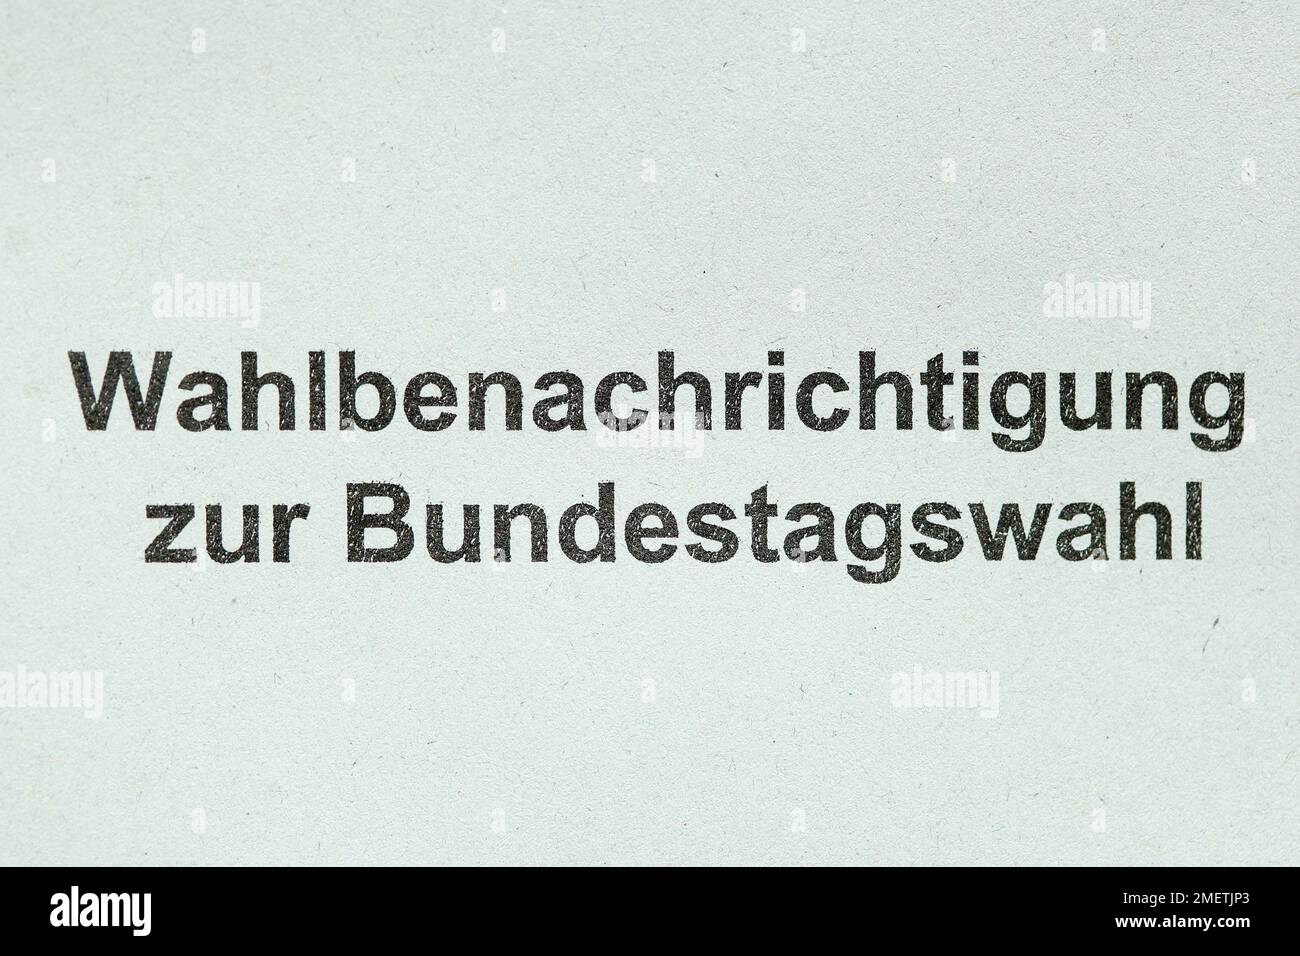 Notification des élections pour l'élection du Bundestag, Allemagne Banque D'Images